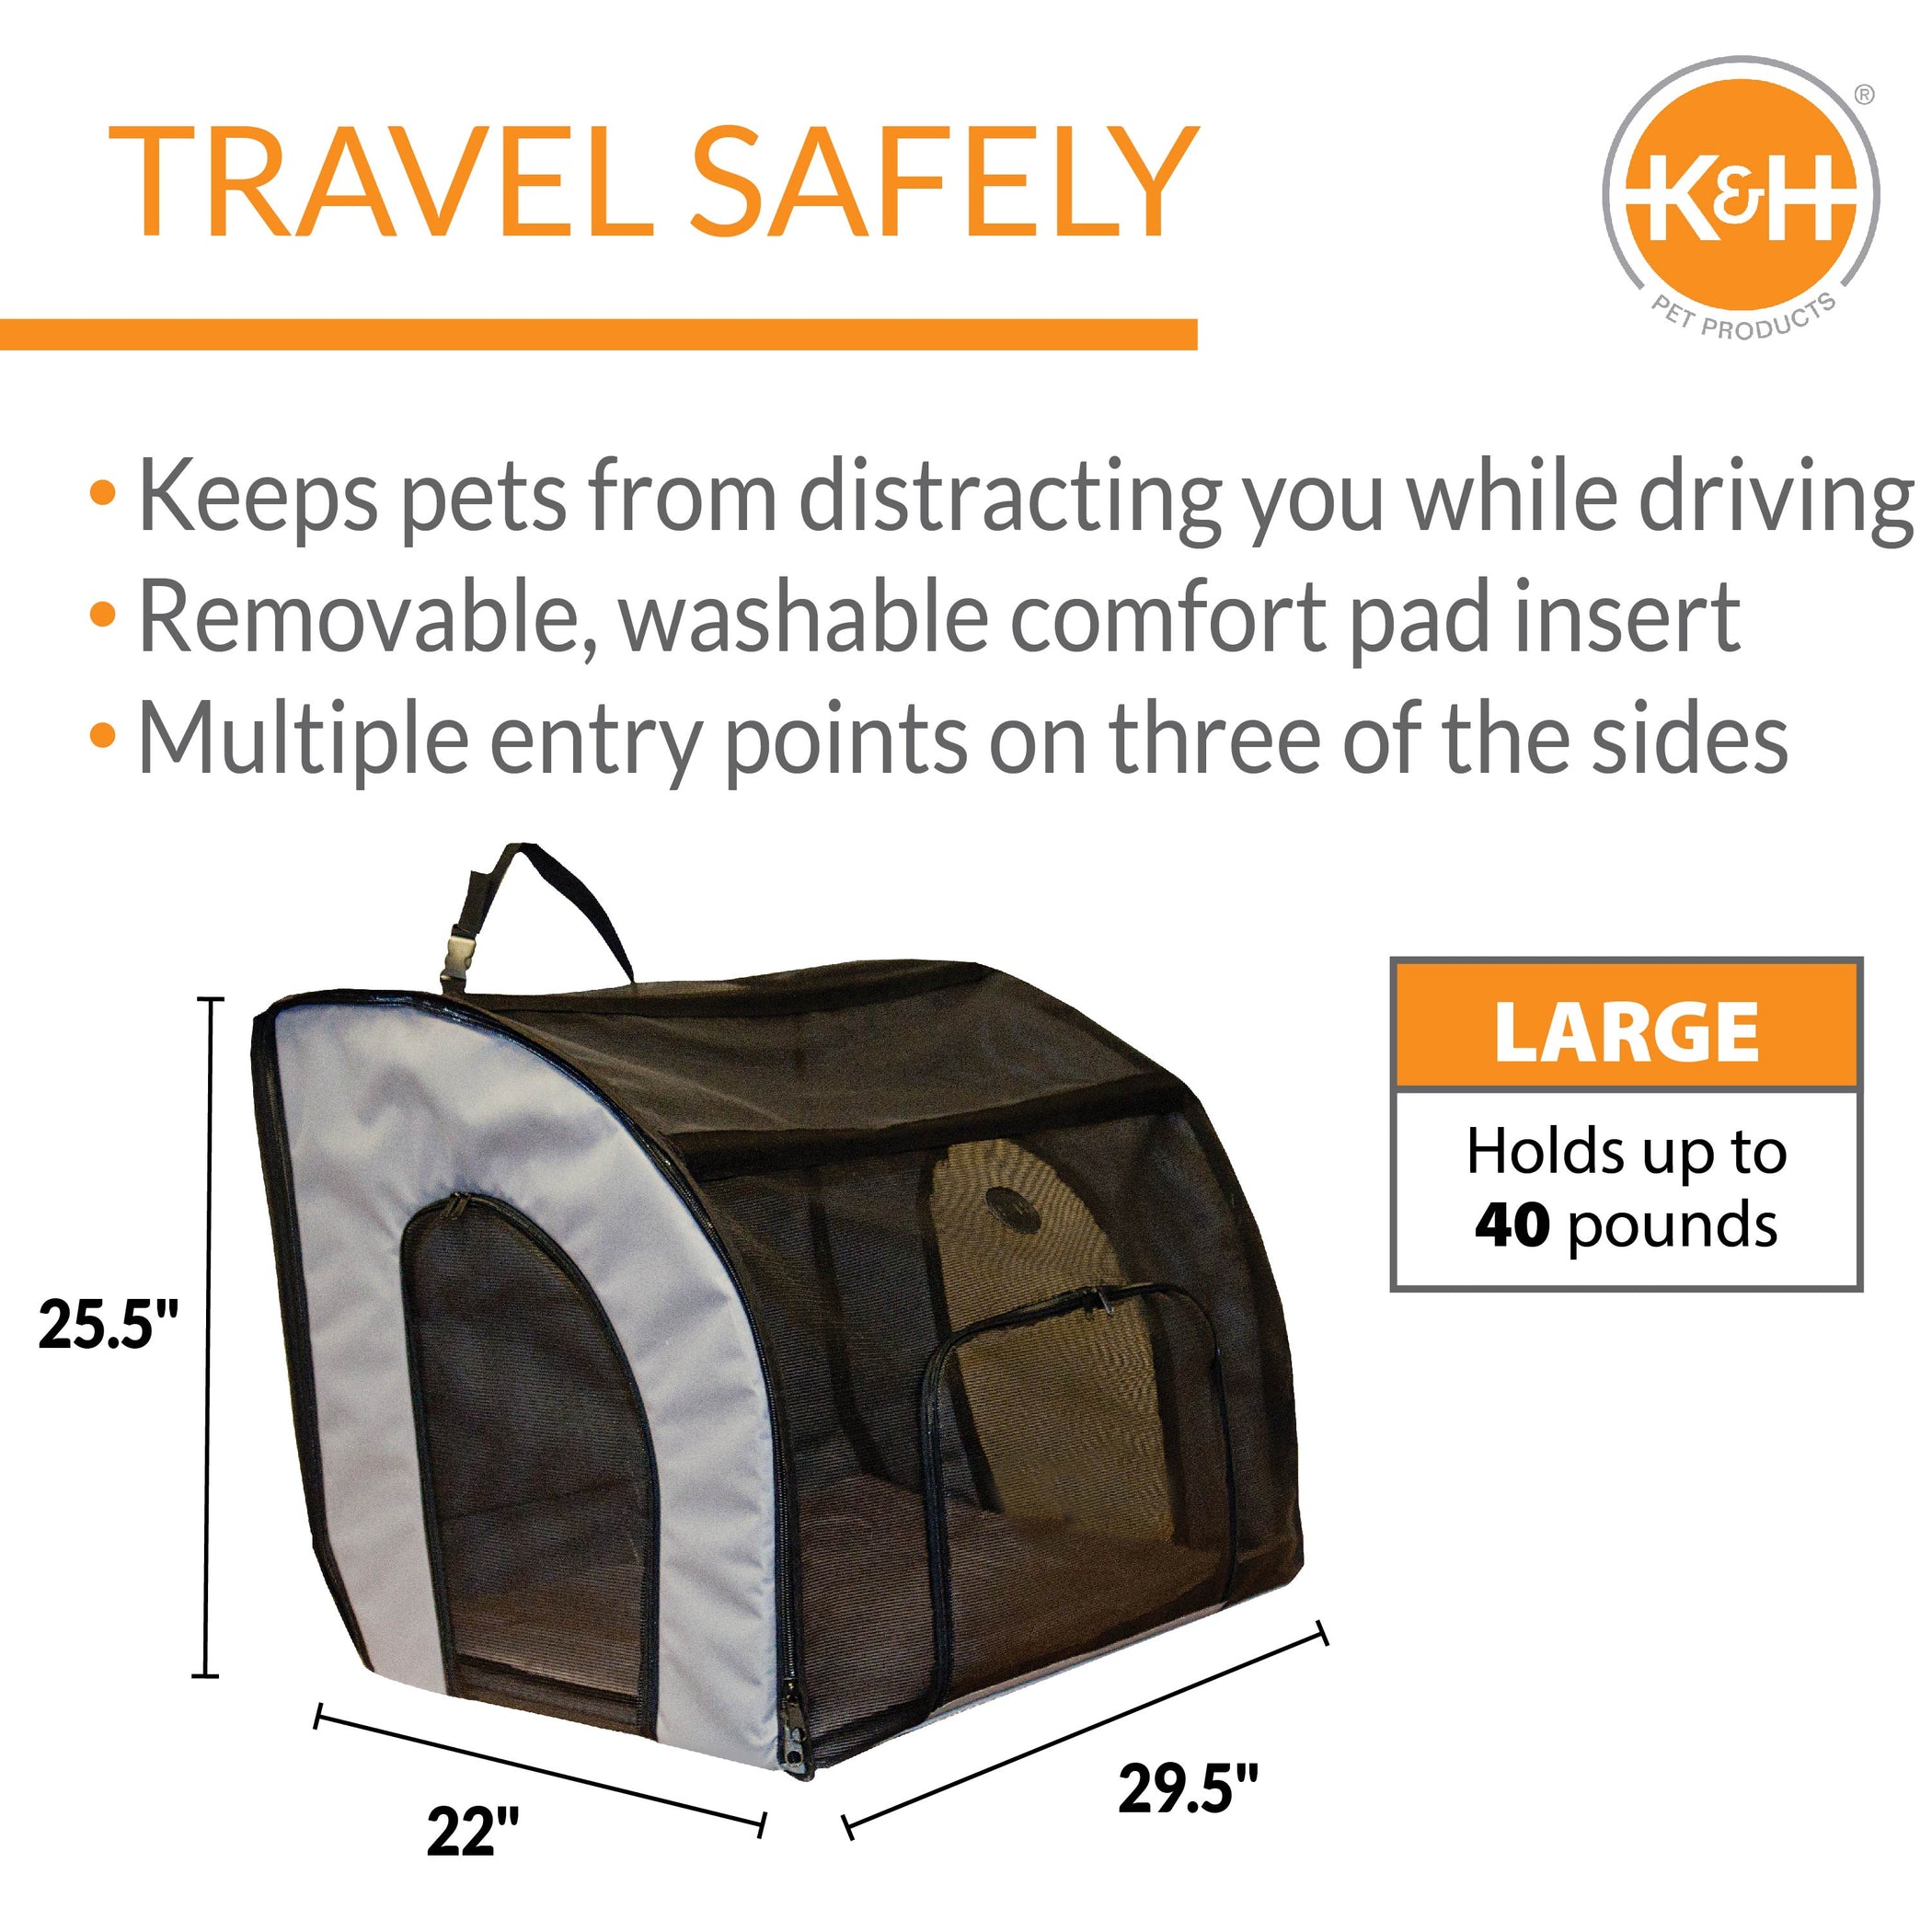 k&h travel safety